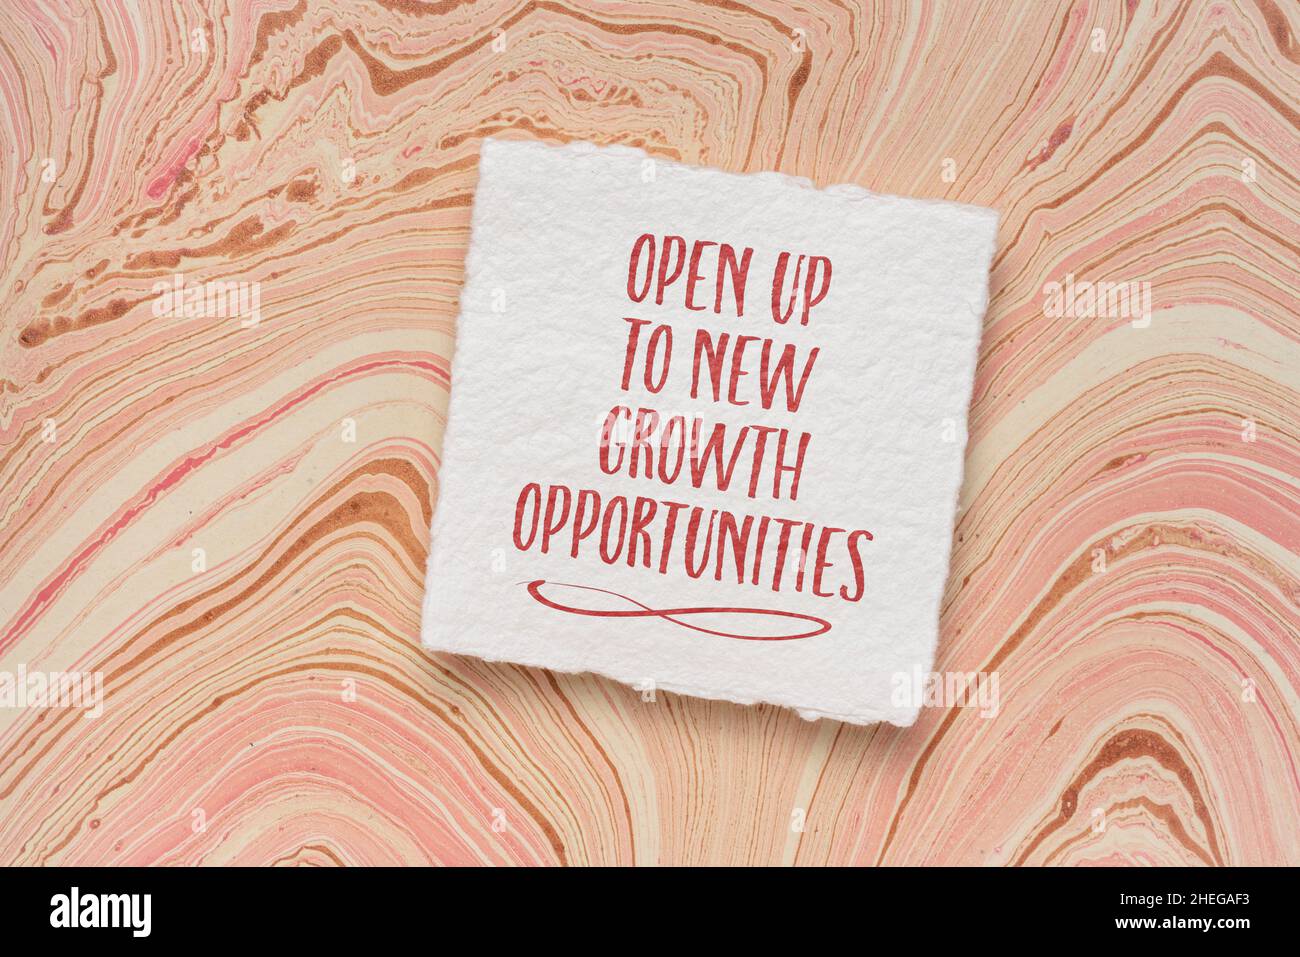 Eröffnen Sie sich neue Wachstumschancen – inspirierende Handschrift auf Aquarellpapier, Karriere, Livemiefyle und persönliches Entwicklungskonzept Stockfoto